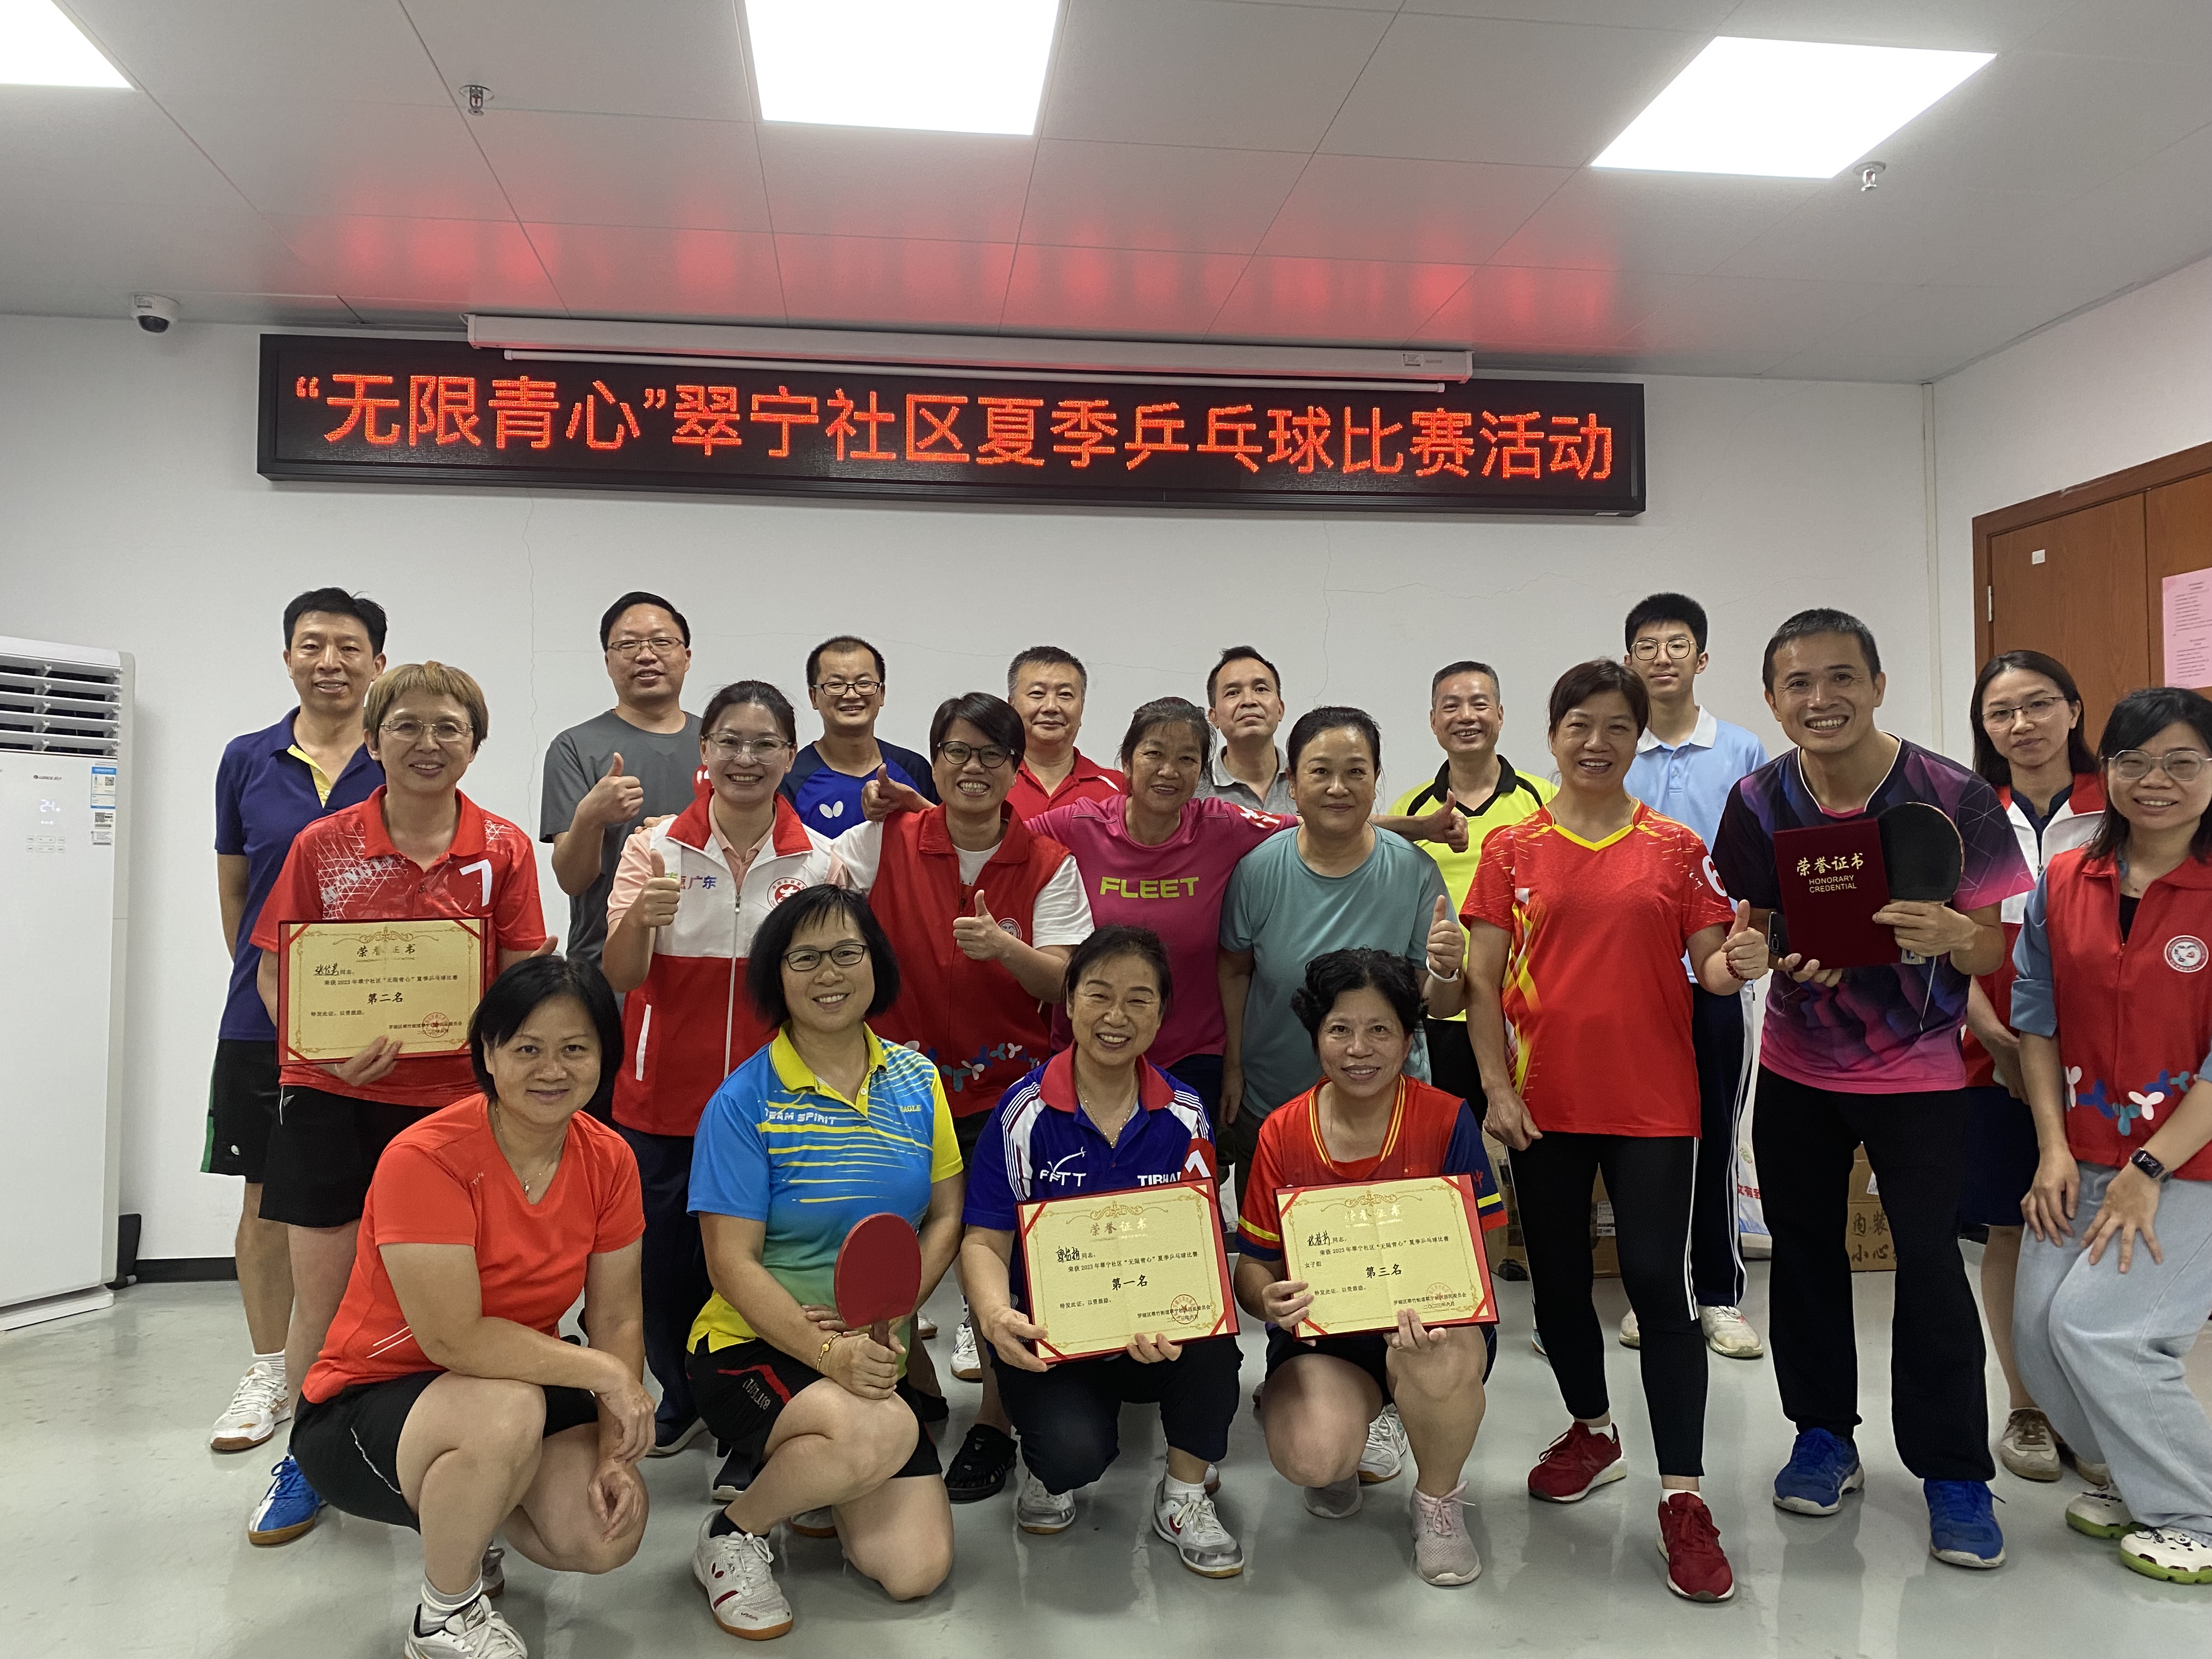 翠宁社区举办“无限青心”夏季乒乓球比赛活动